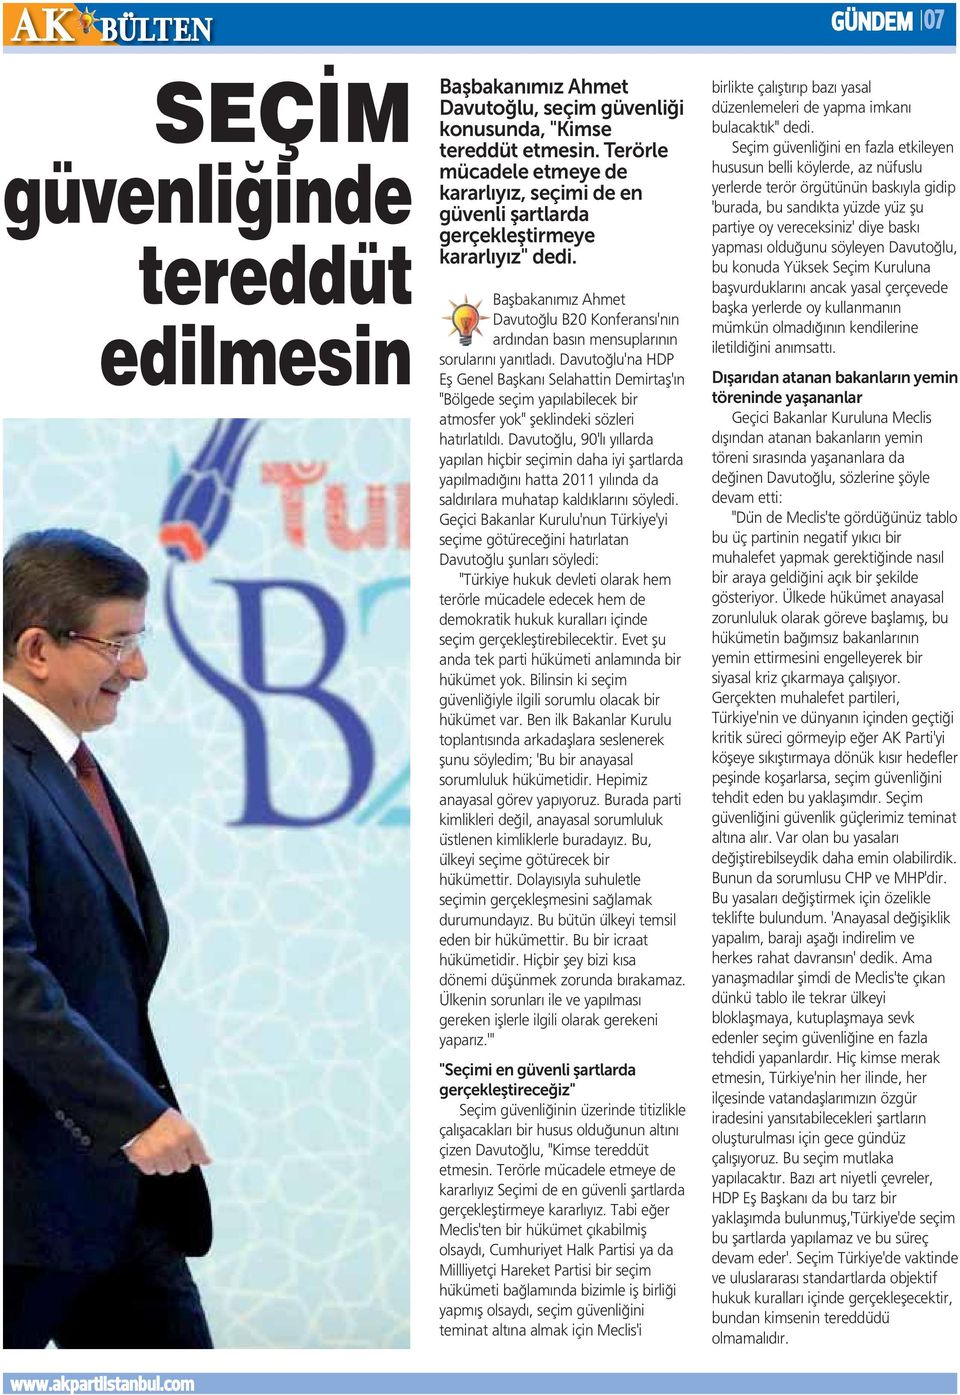 Başbakanımız Ahmet Davutoğlu B20 Konferansı'nın ardından basın mensuplarının sorularını yanıtladı.